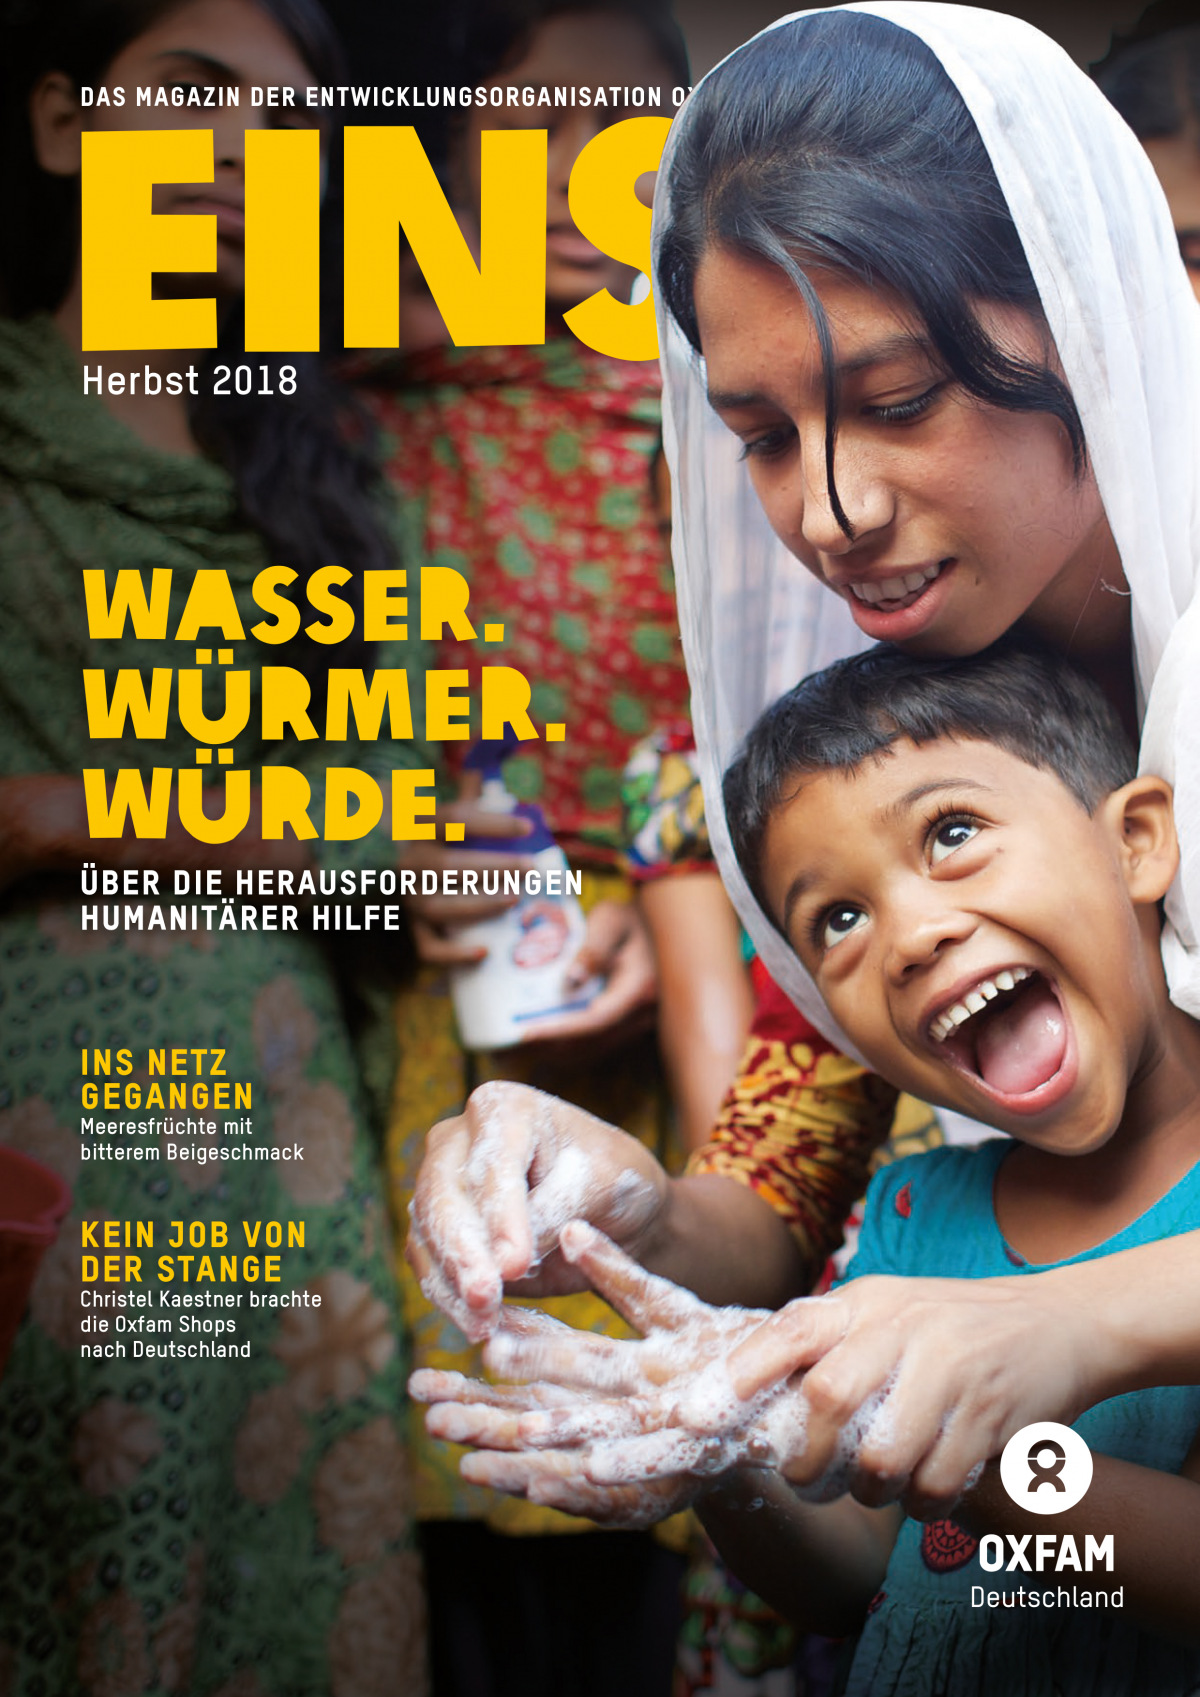 Titelbild der EINS-Herbstausgabe 2018